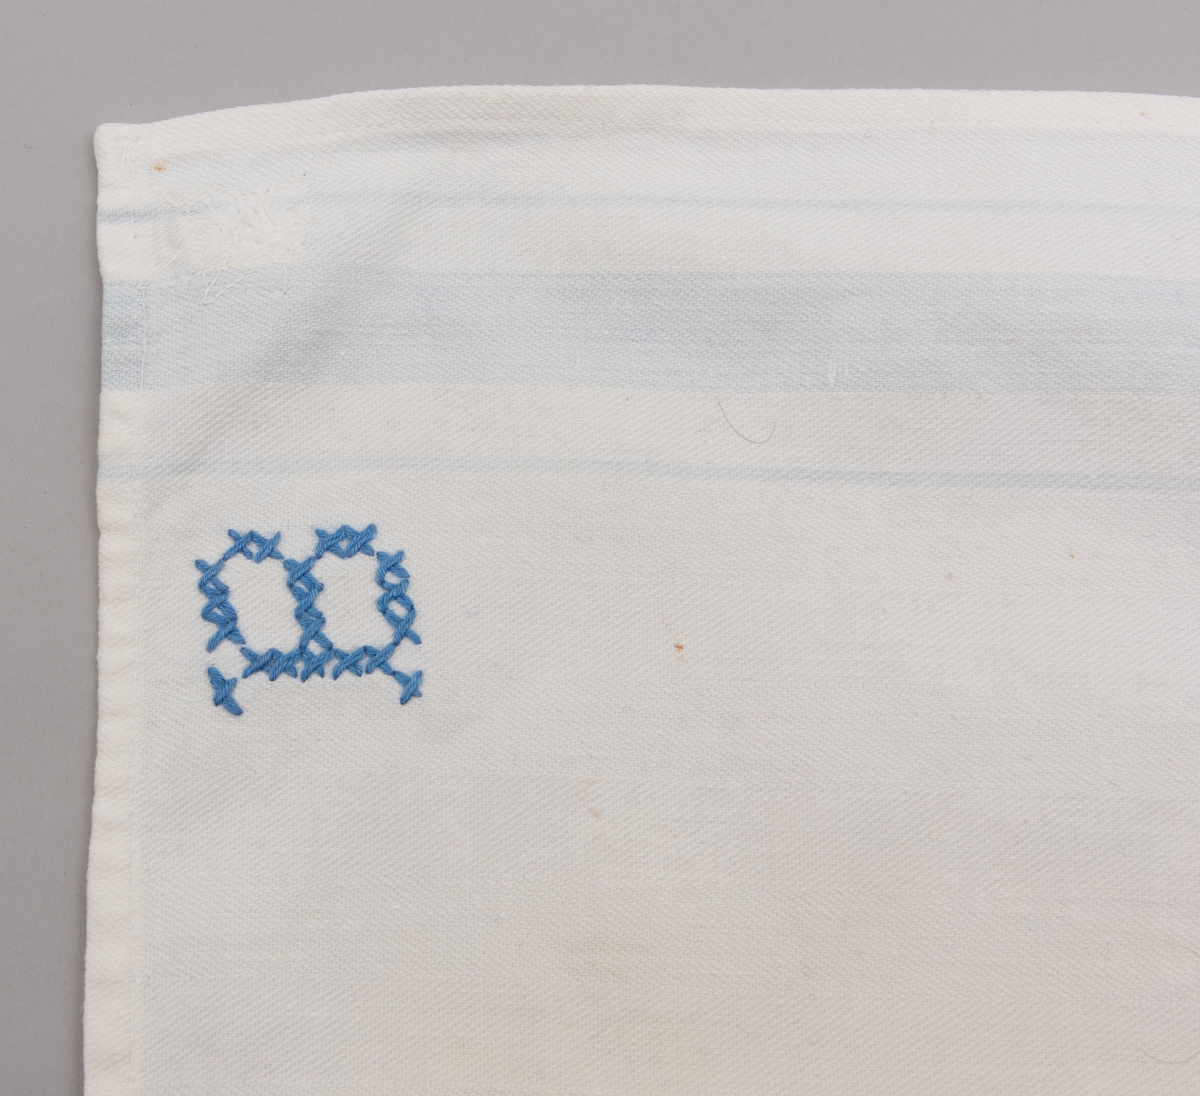 Kjøkkenhåndkle sydd  av melsekk. Påført monogram "B" med blå korssting.